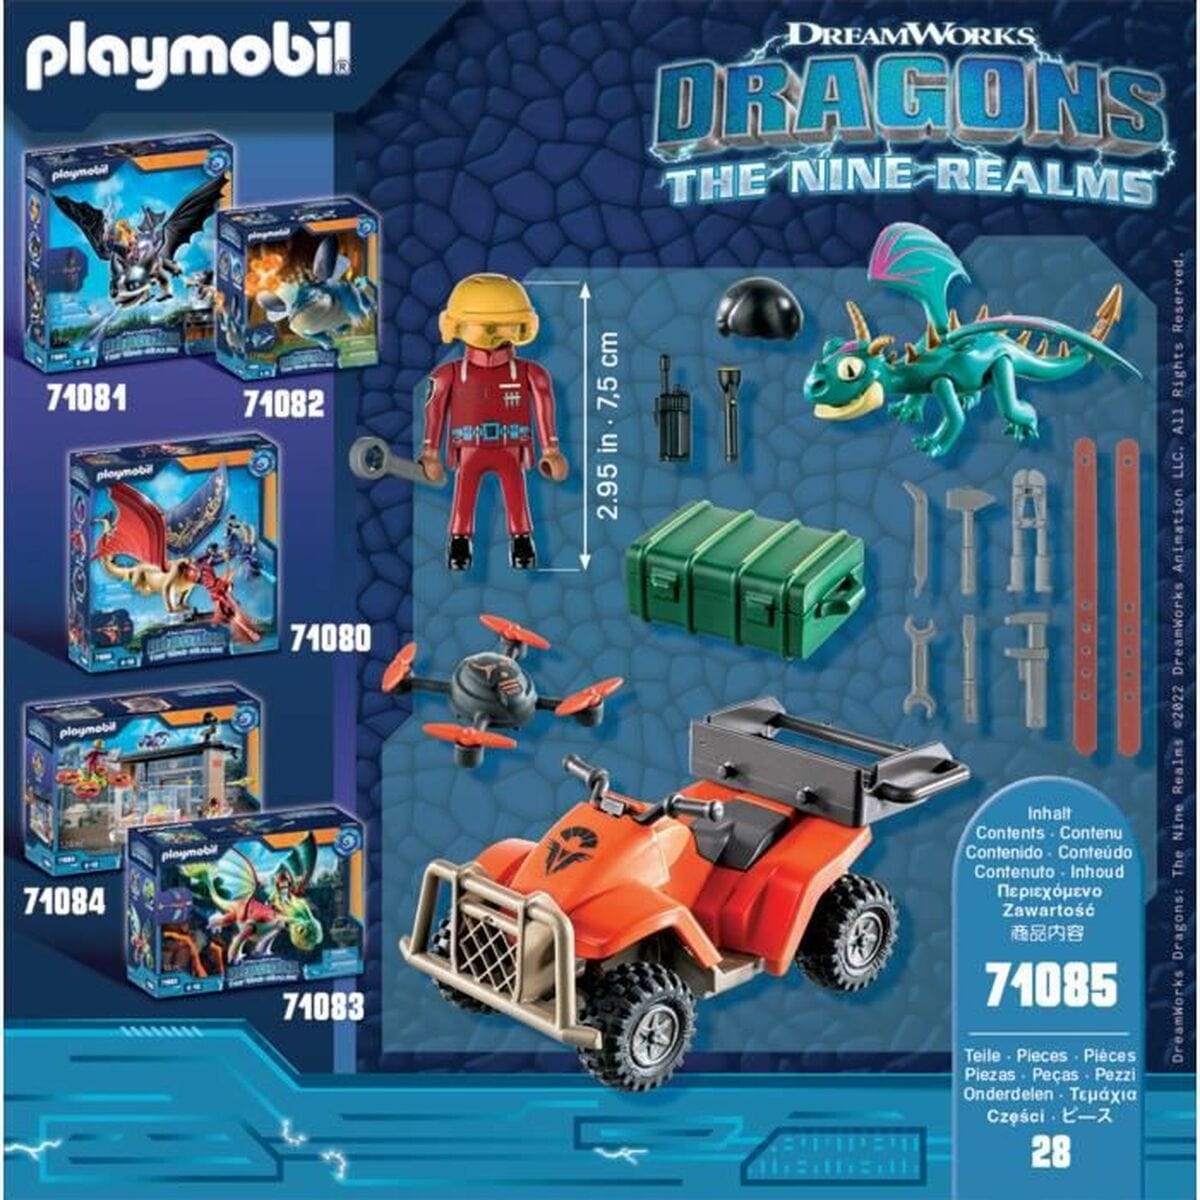 Playmobil Spielzeug | Kostüme > Spielzeug und Spiele > Weiteres spielzeug Playset Playmobil 71085 Drache